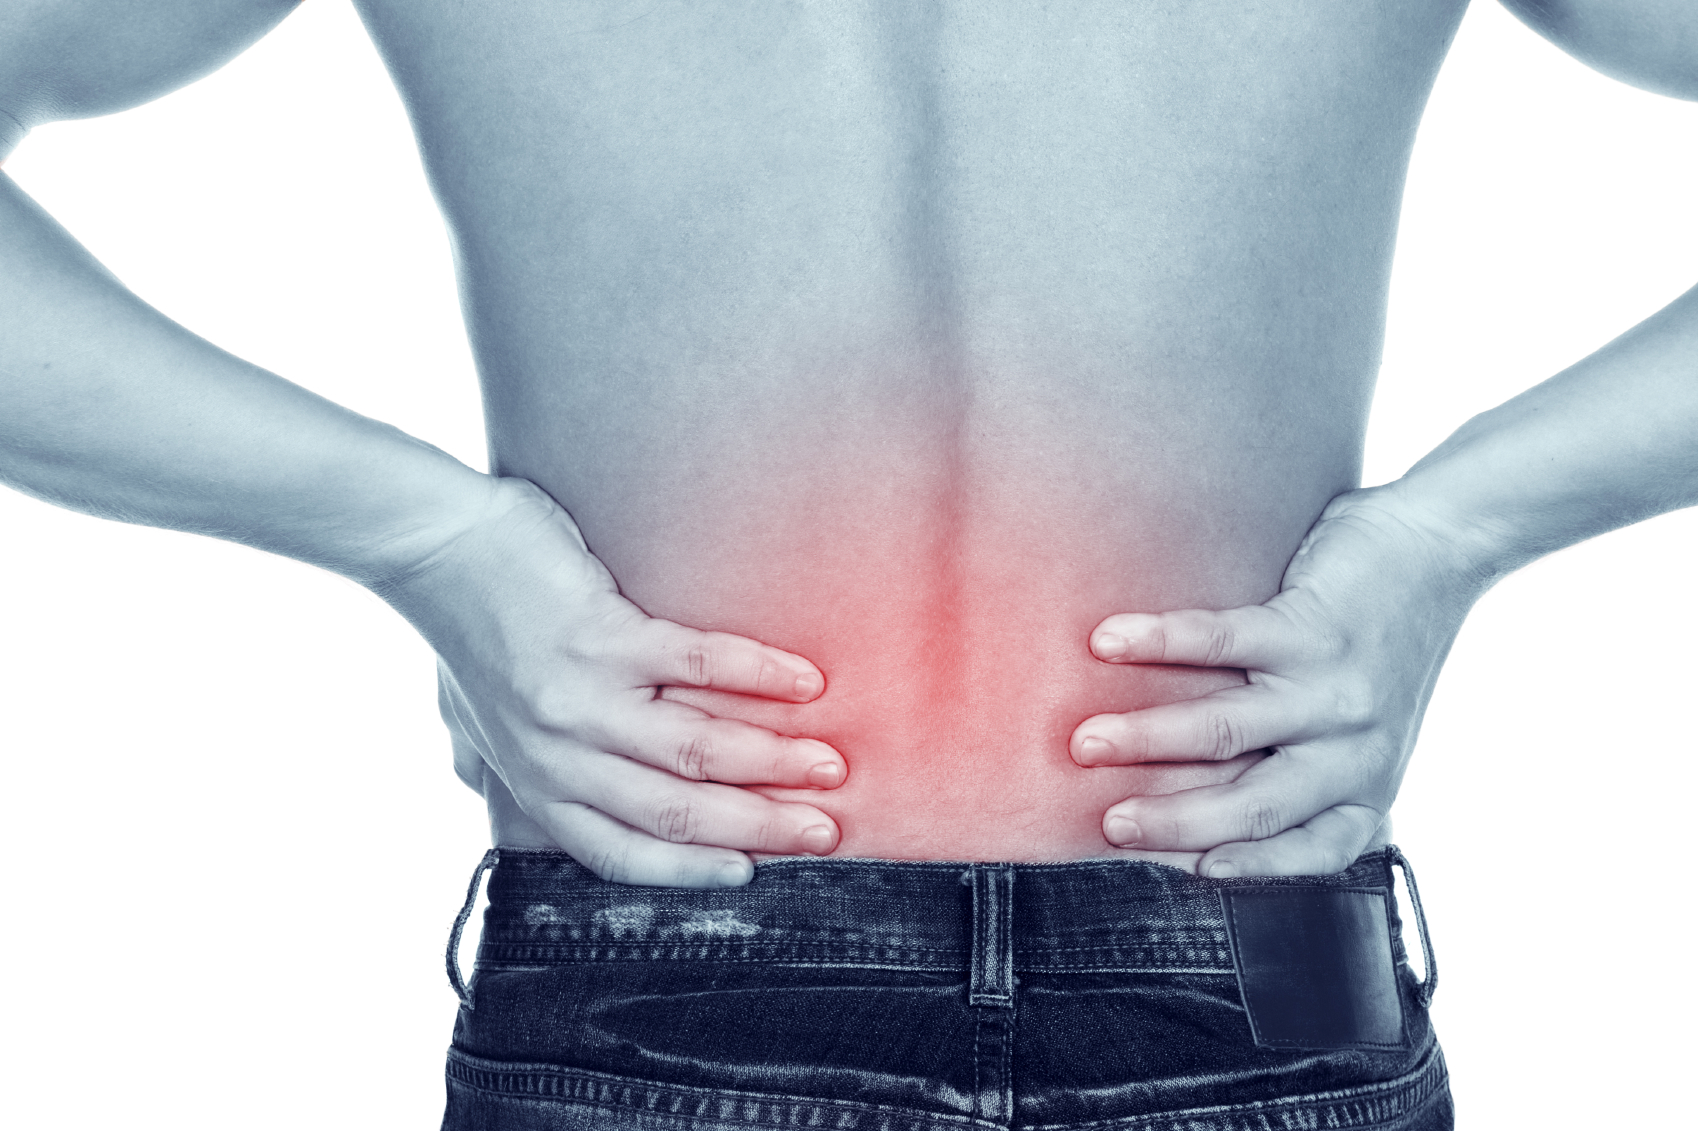 Πόνος στη μέση: Πότε δείχνει ανεύρυσμα, αρθρίτιδα ή πέτρες στα νεφρά